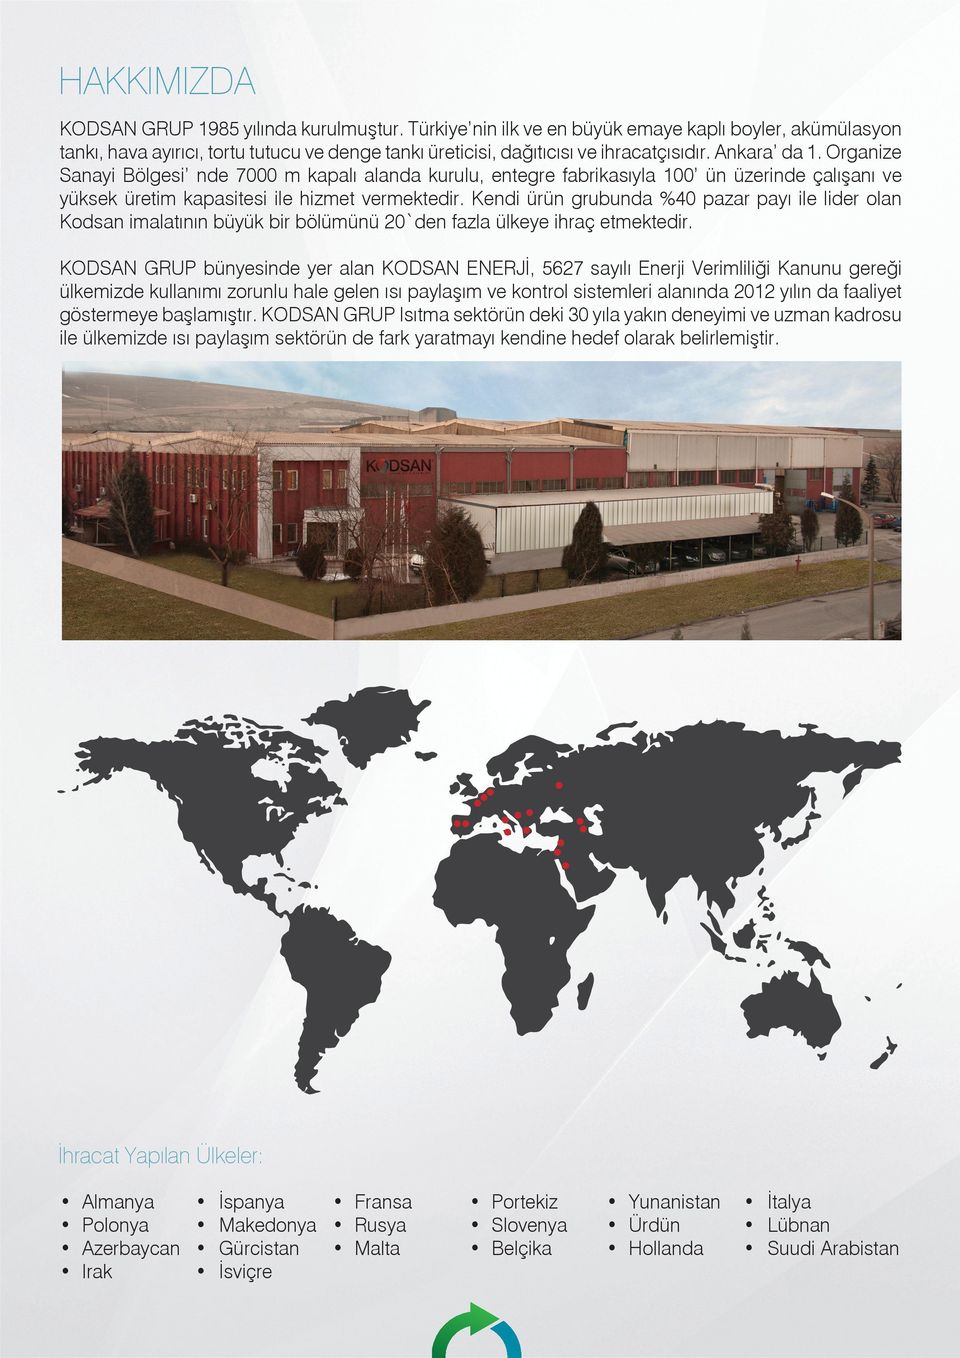 Kendi ürün grubunda %40 pazar payı ile lider olan Kodsan imalatının büyük bir bölümünü 20`den fazla ülkeye ihraç etmektedir.